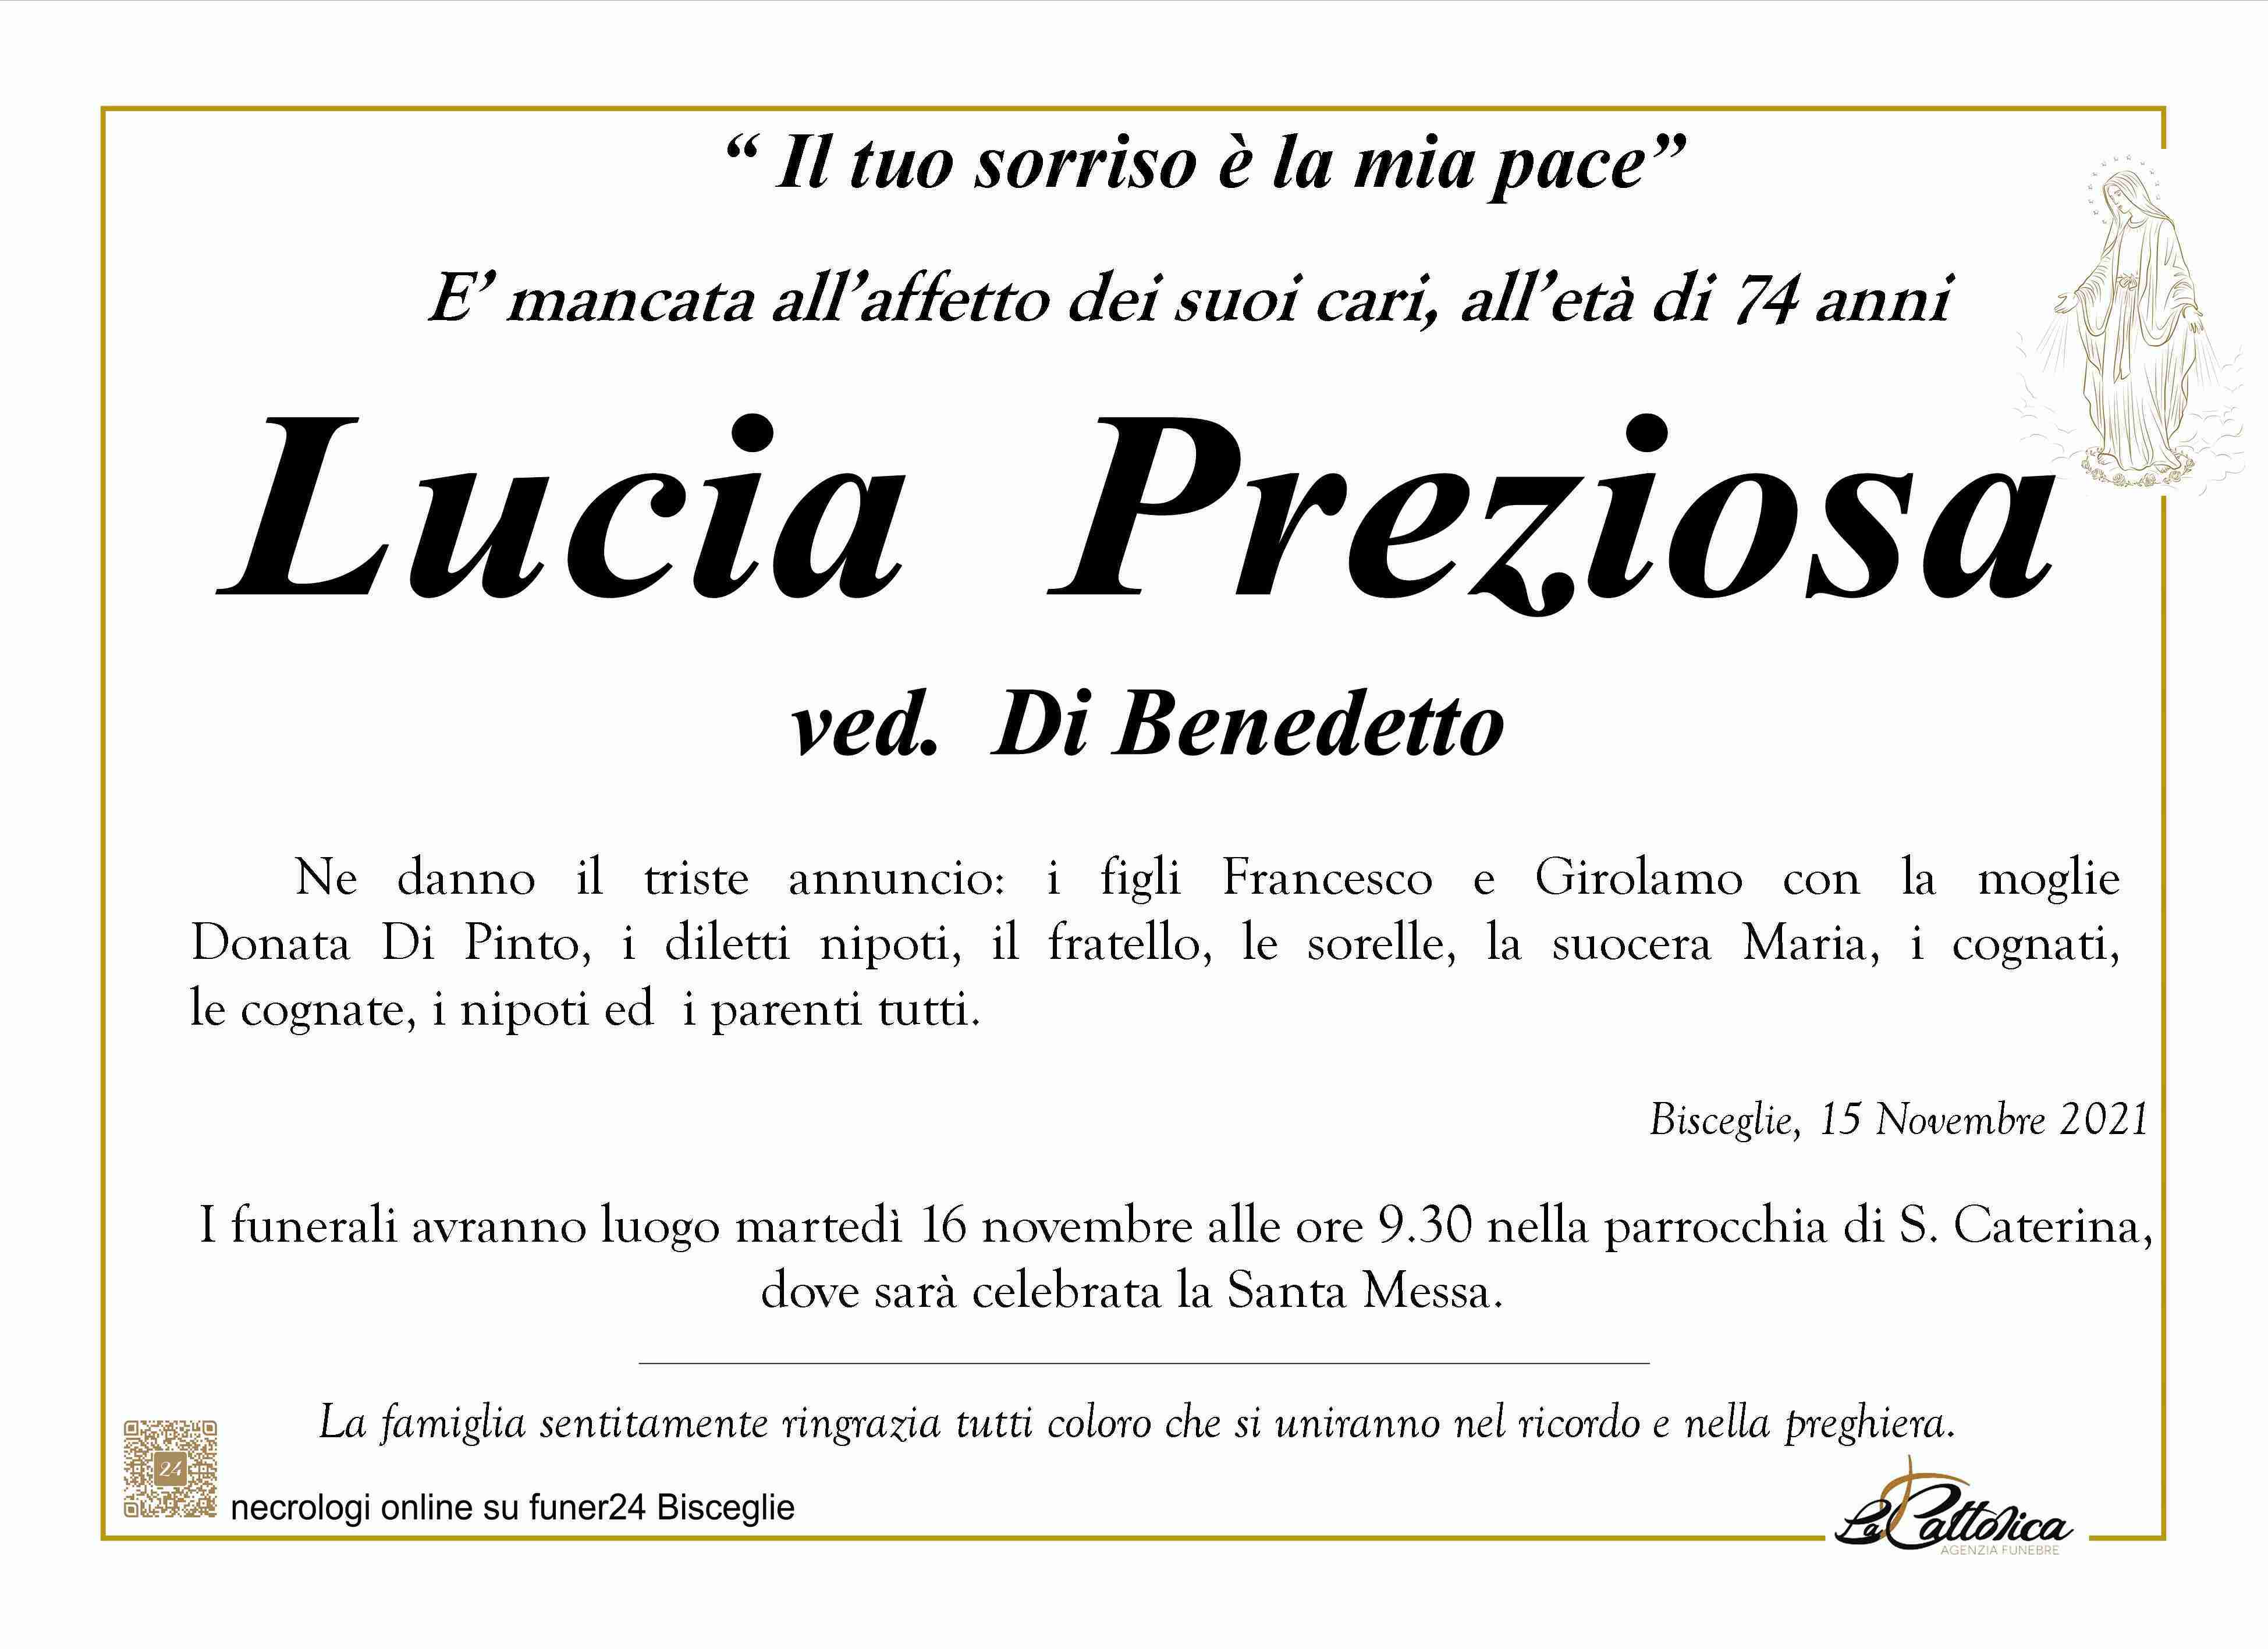 Lucia Preziosa